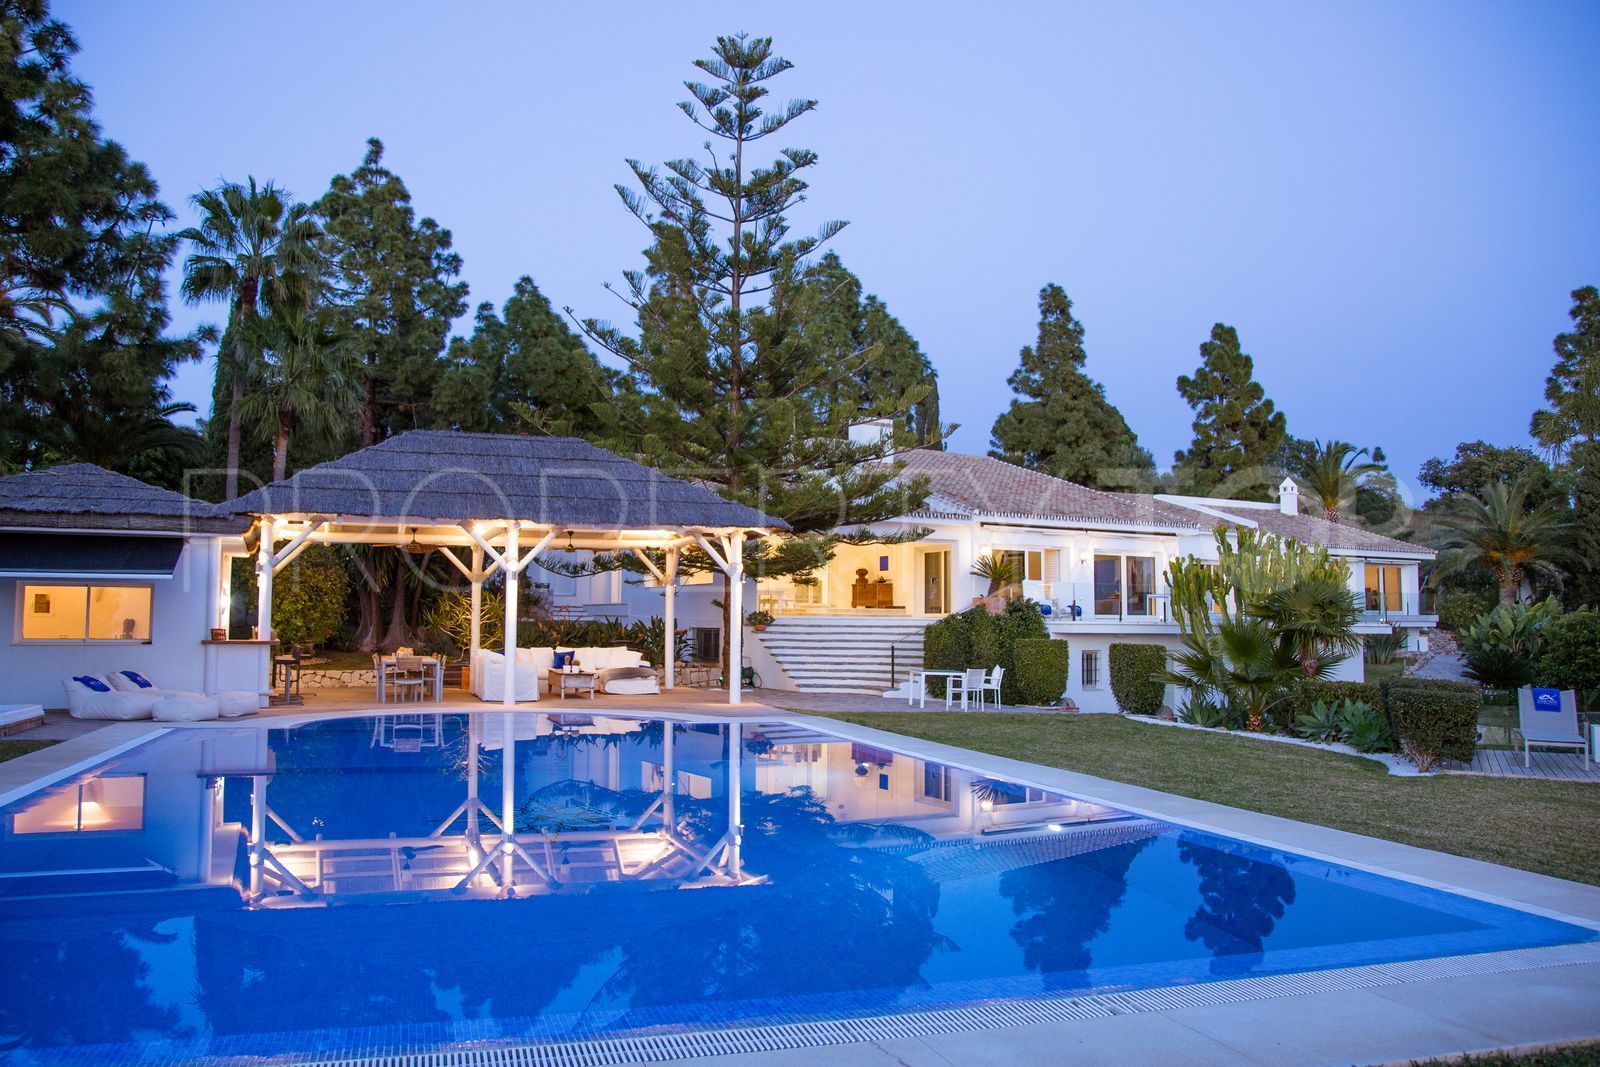 7 bedrooms villa in Hacienda las Chapas for sale